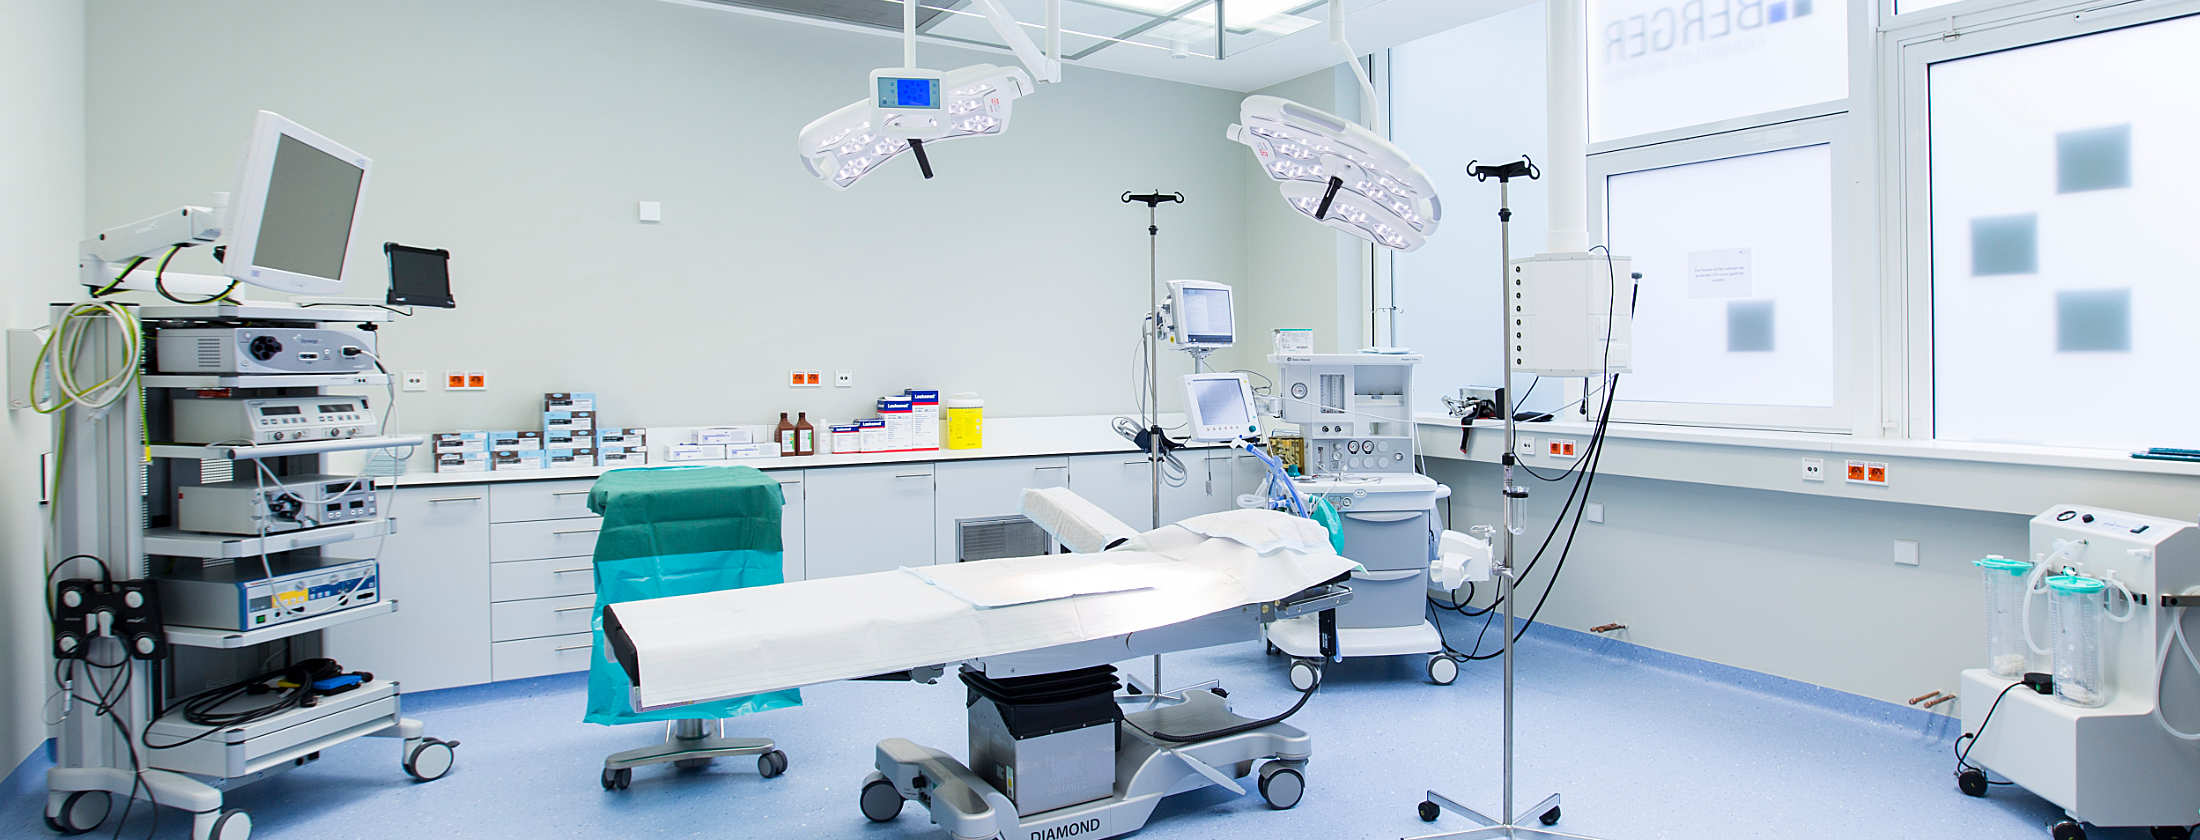 Operationssaal der Privatklinik im Frankfurter Westend. Mitten im Raum steht ein OP-Tisch, über ihn OP-Lampen. Im Hintergrund stehen Schränke mit Schubladen und Ablageflächen. Ein Anästhesiegerät zur Durchführung von Narkosen und ein Arthroskopieturm.